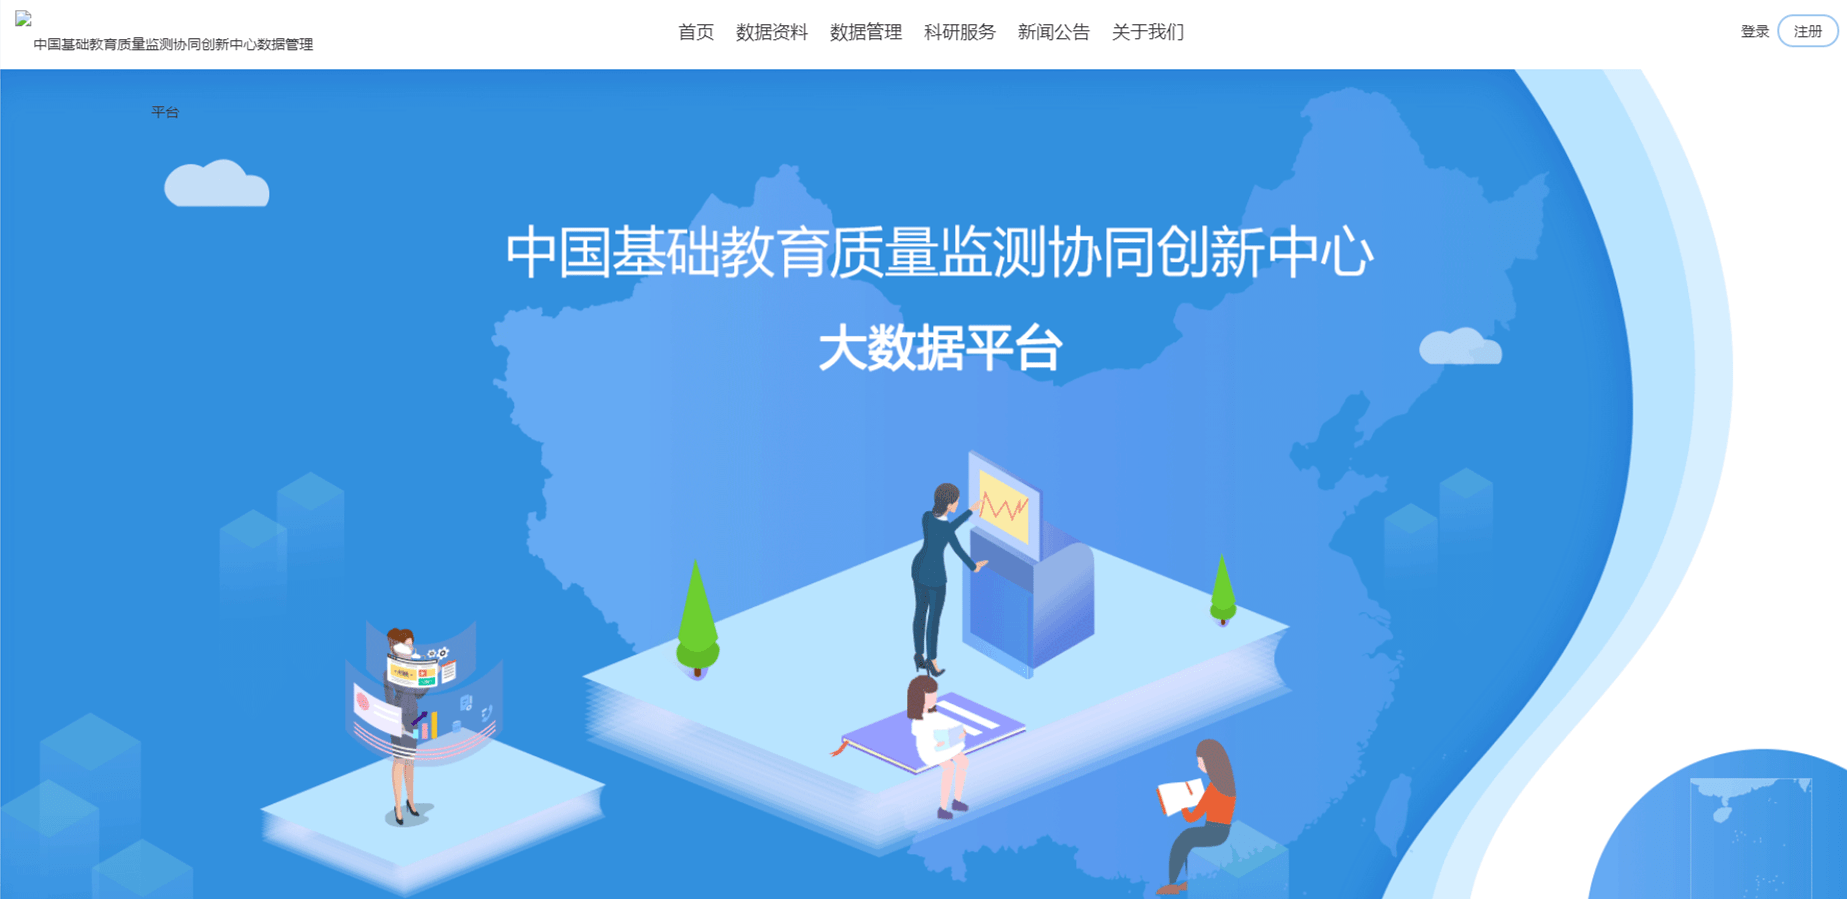 安徽基础教育应用平台登录 安徽教育平台登录账号